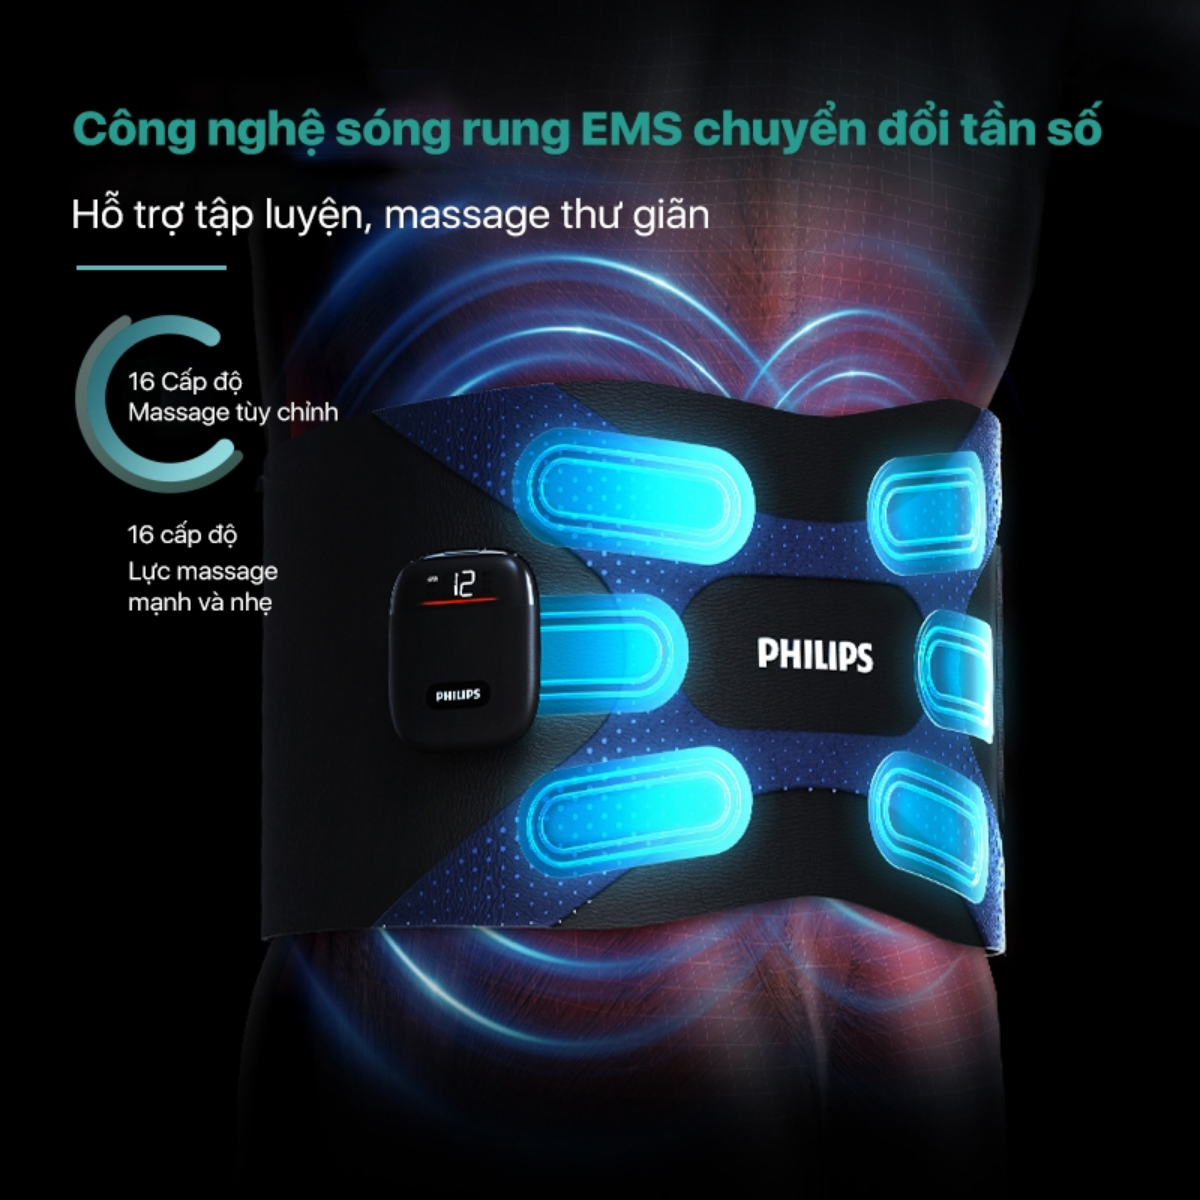 Máy massage vùng lưng/ eo/ bụng PHILIPS PPM4331 công nghệ sóng rung EMS